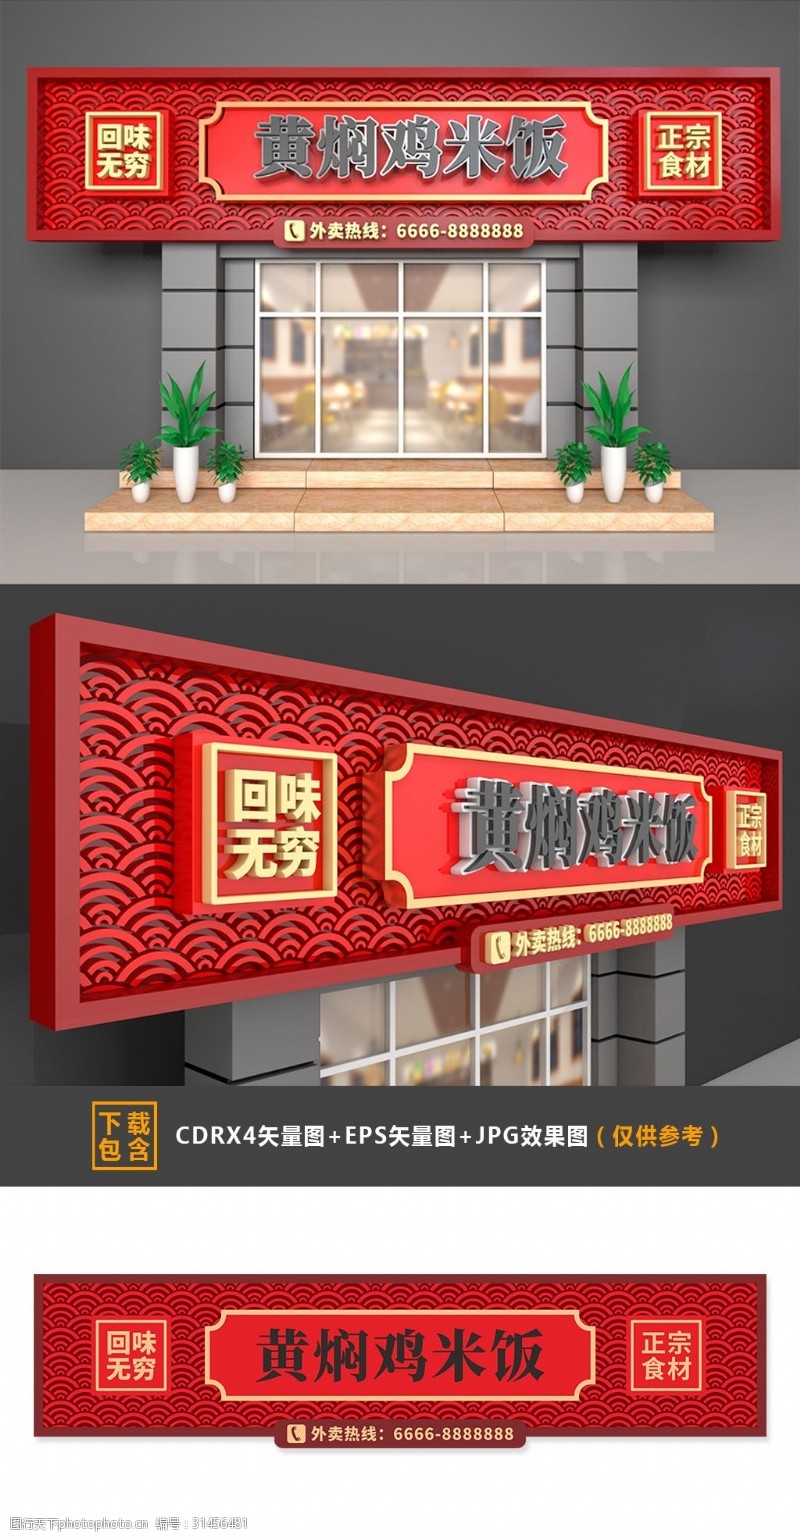 大型3D立体中式黄焖鸡米饭门头招牌设计